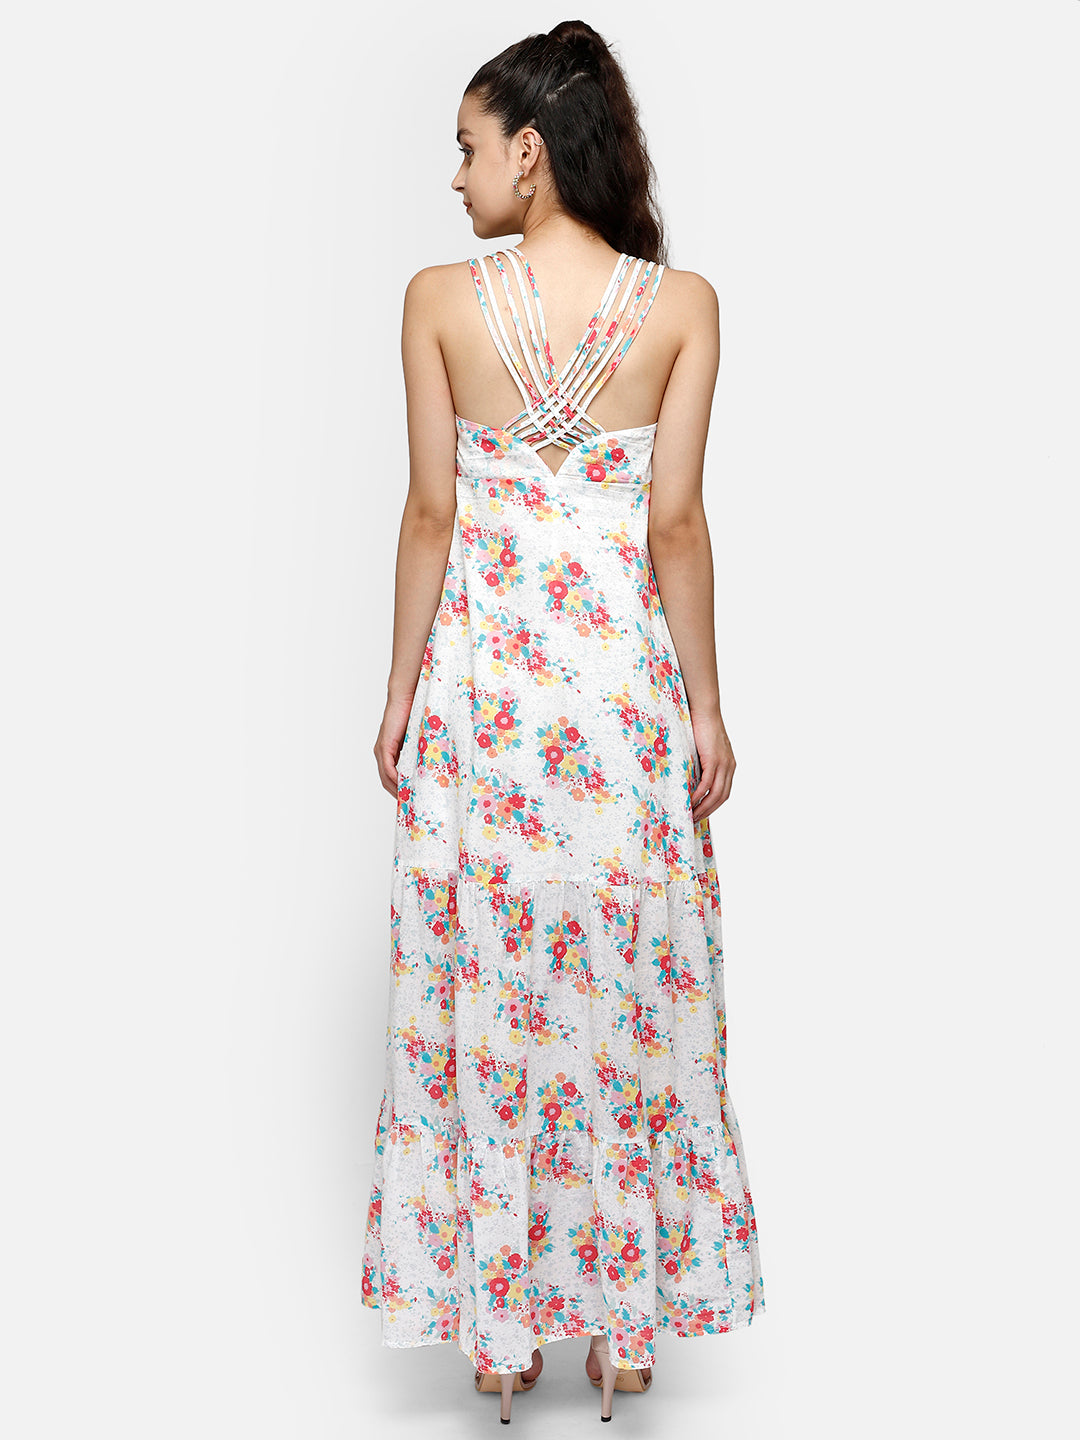 White floral print maxi dress